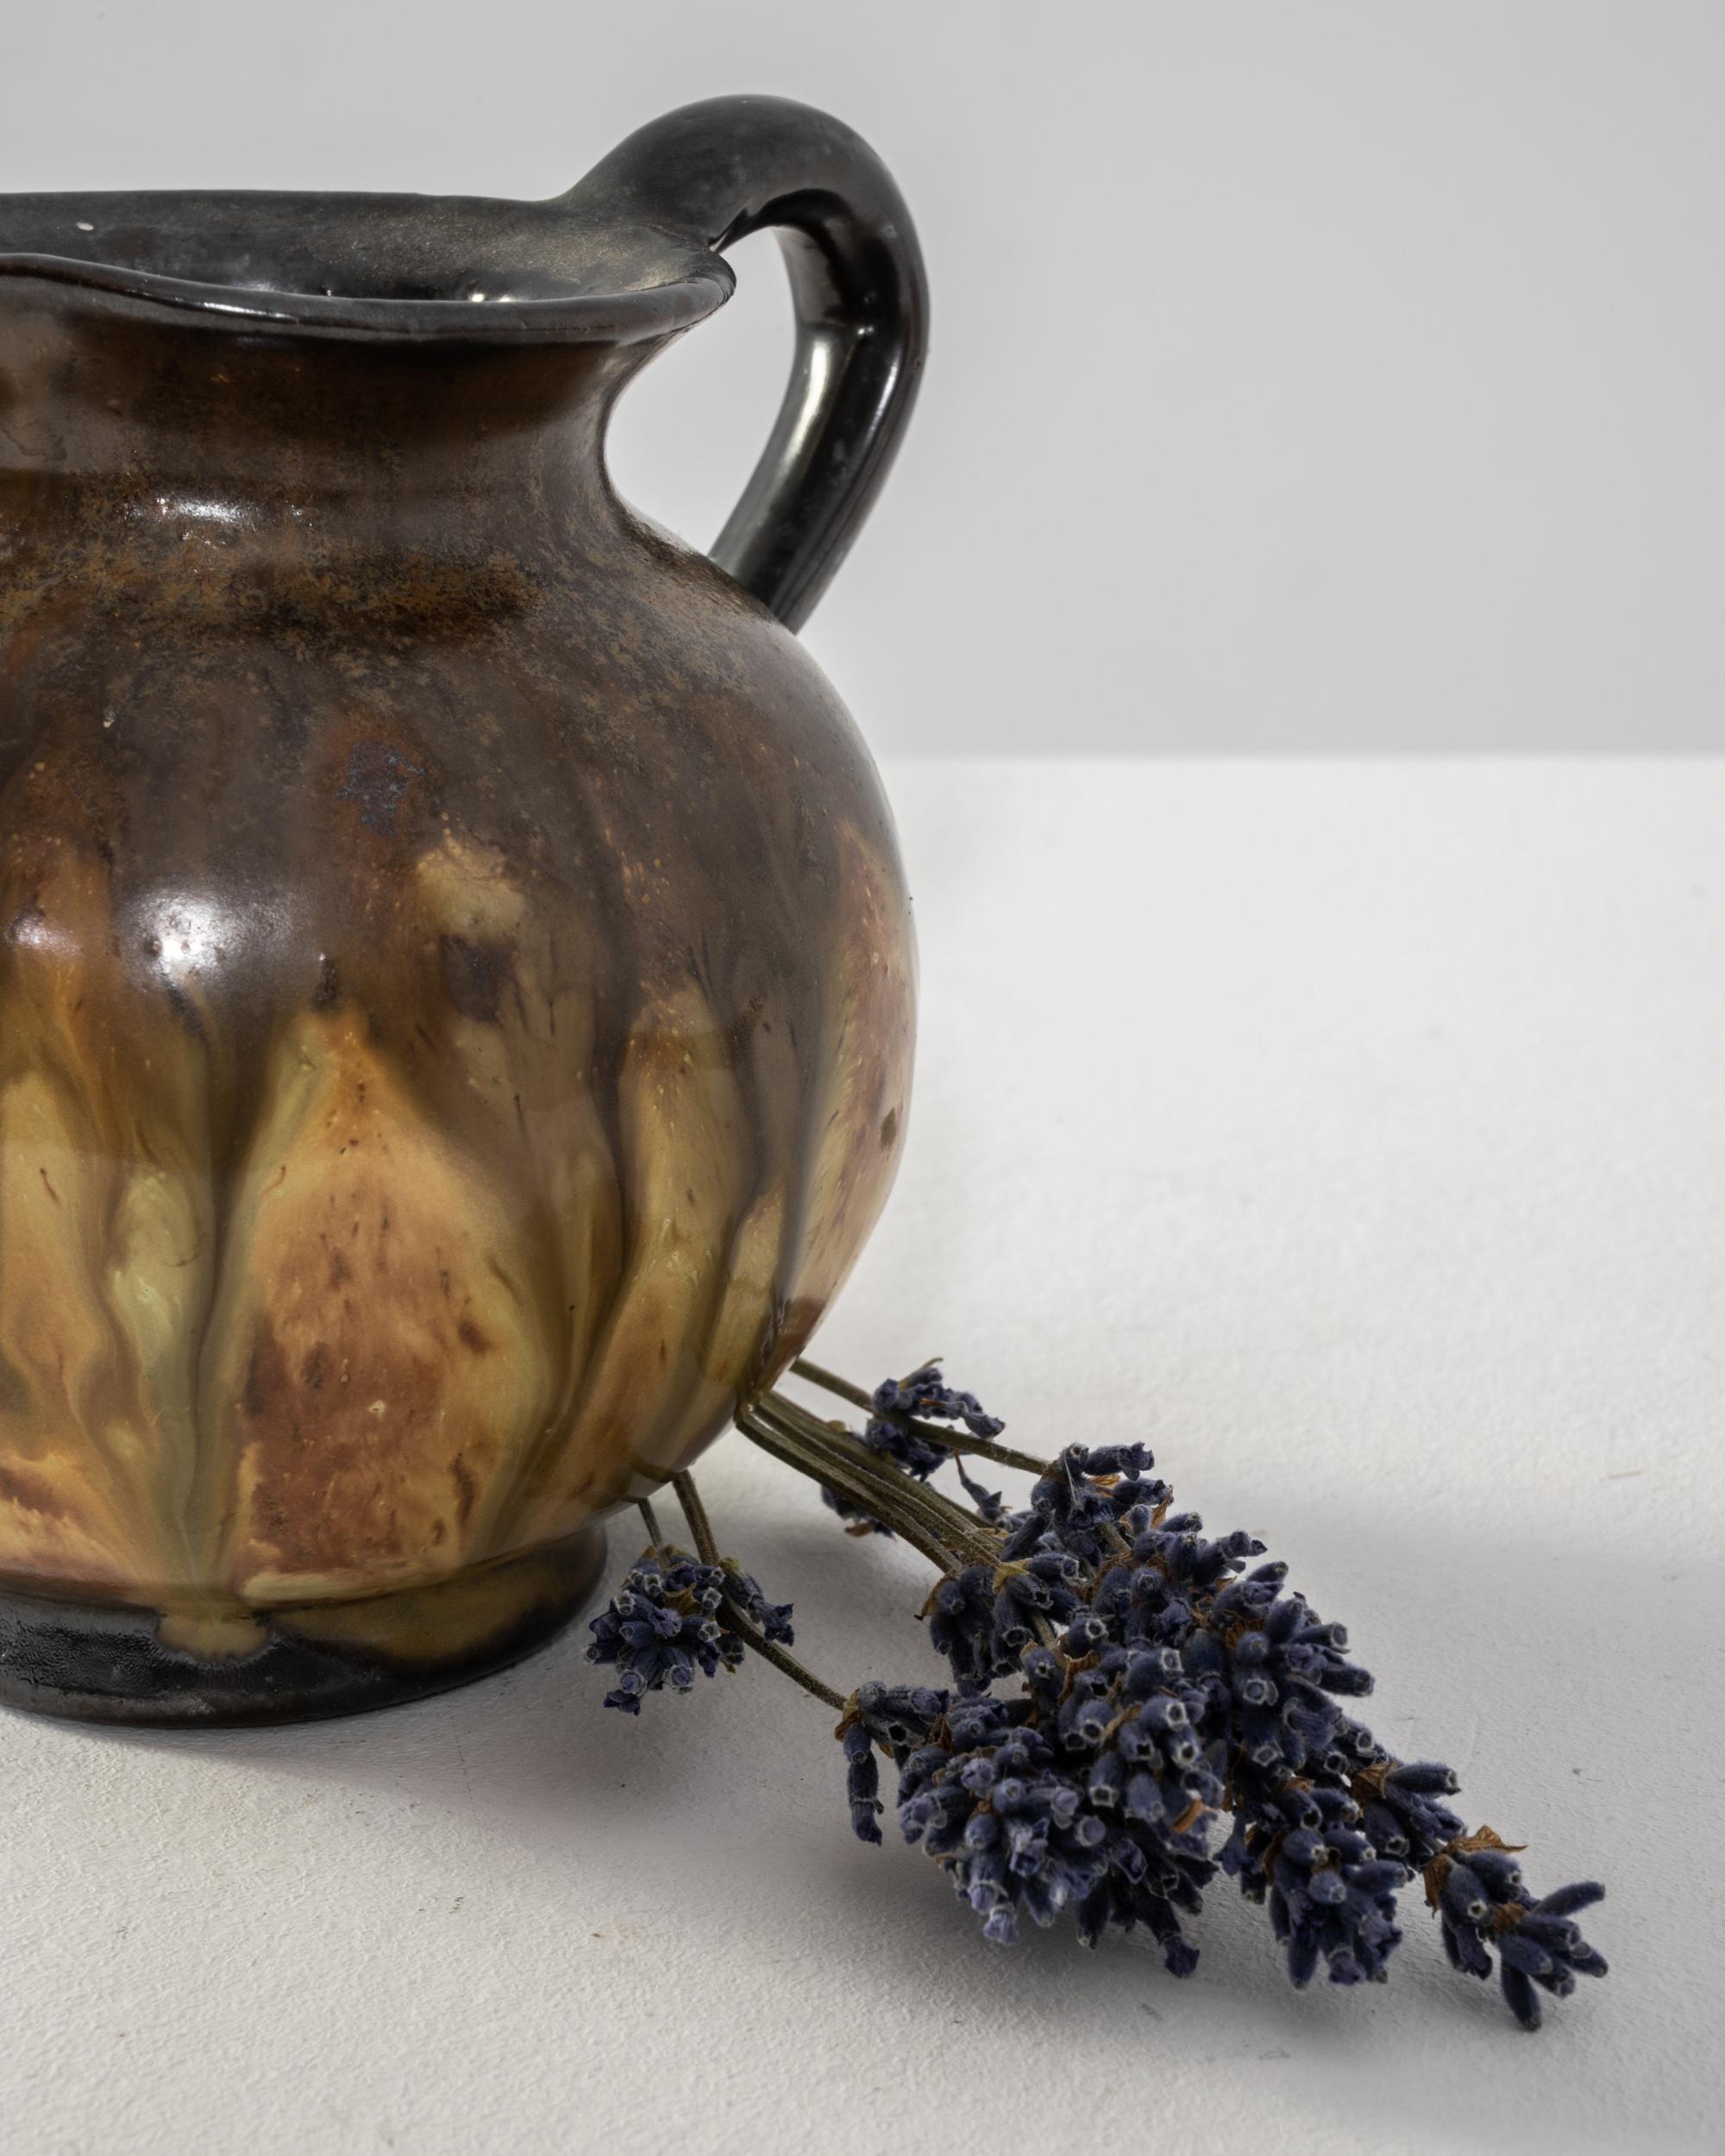 Le charme rustique de cette cruche en céramique française du XXe siècle, ornée d'une glaçure tachetée dans des tons terreux et des touches de moutarde et de bleu pâle. Le bord, le bec et la poignée noirs ajoutent une touche d'élégance à son attrait